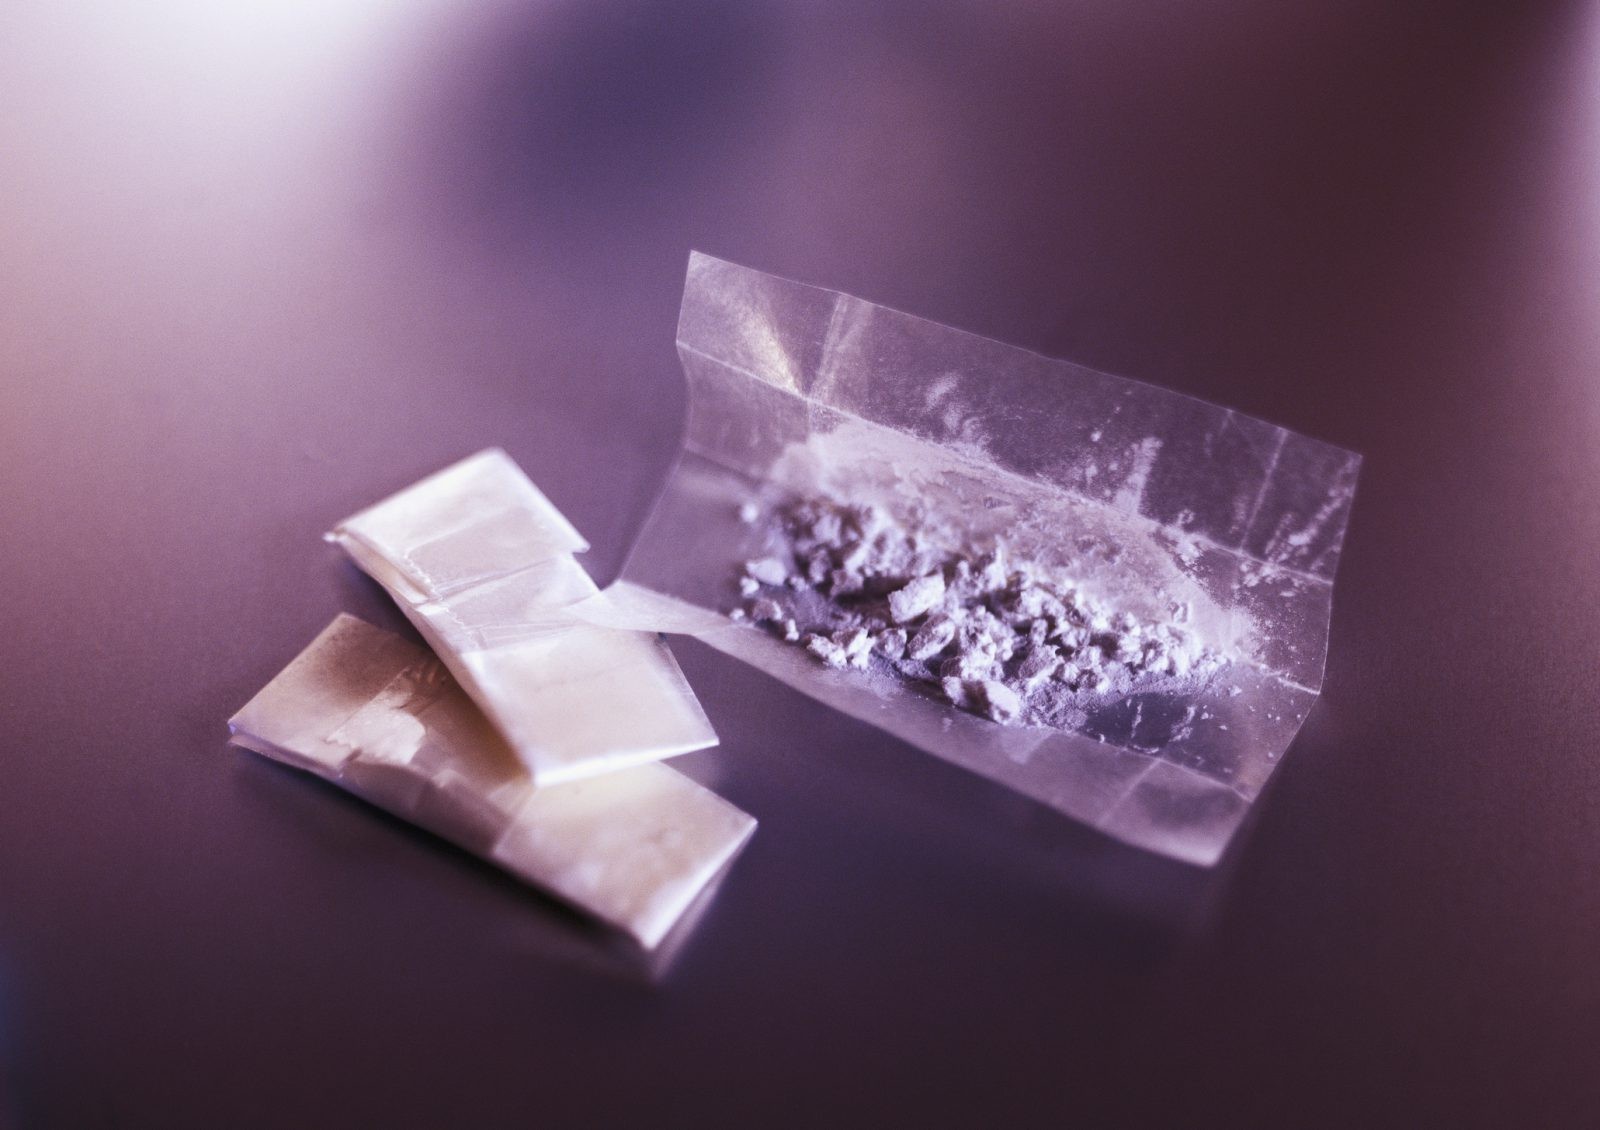 Nowy narkotyk trafił do Polski. Jest 60 razy mocniejszy niż morfina